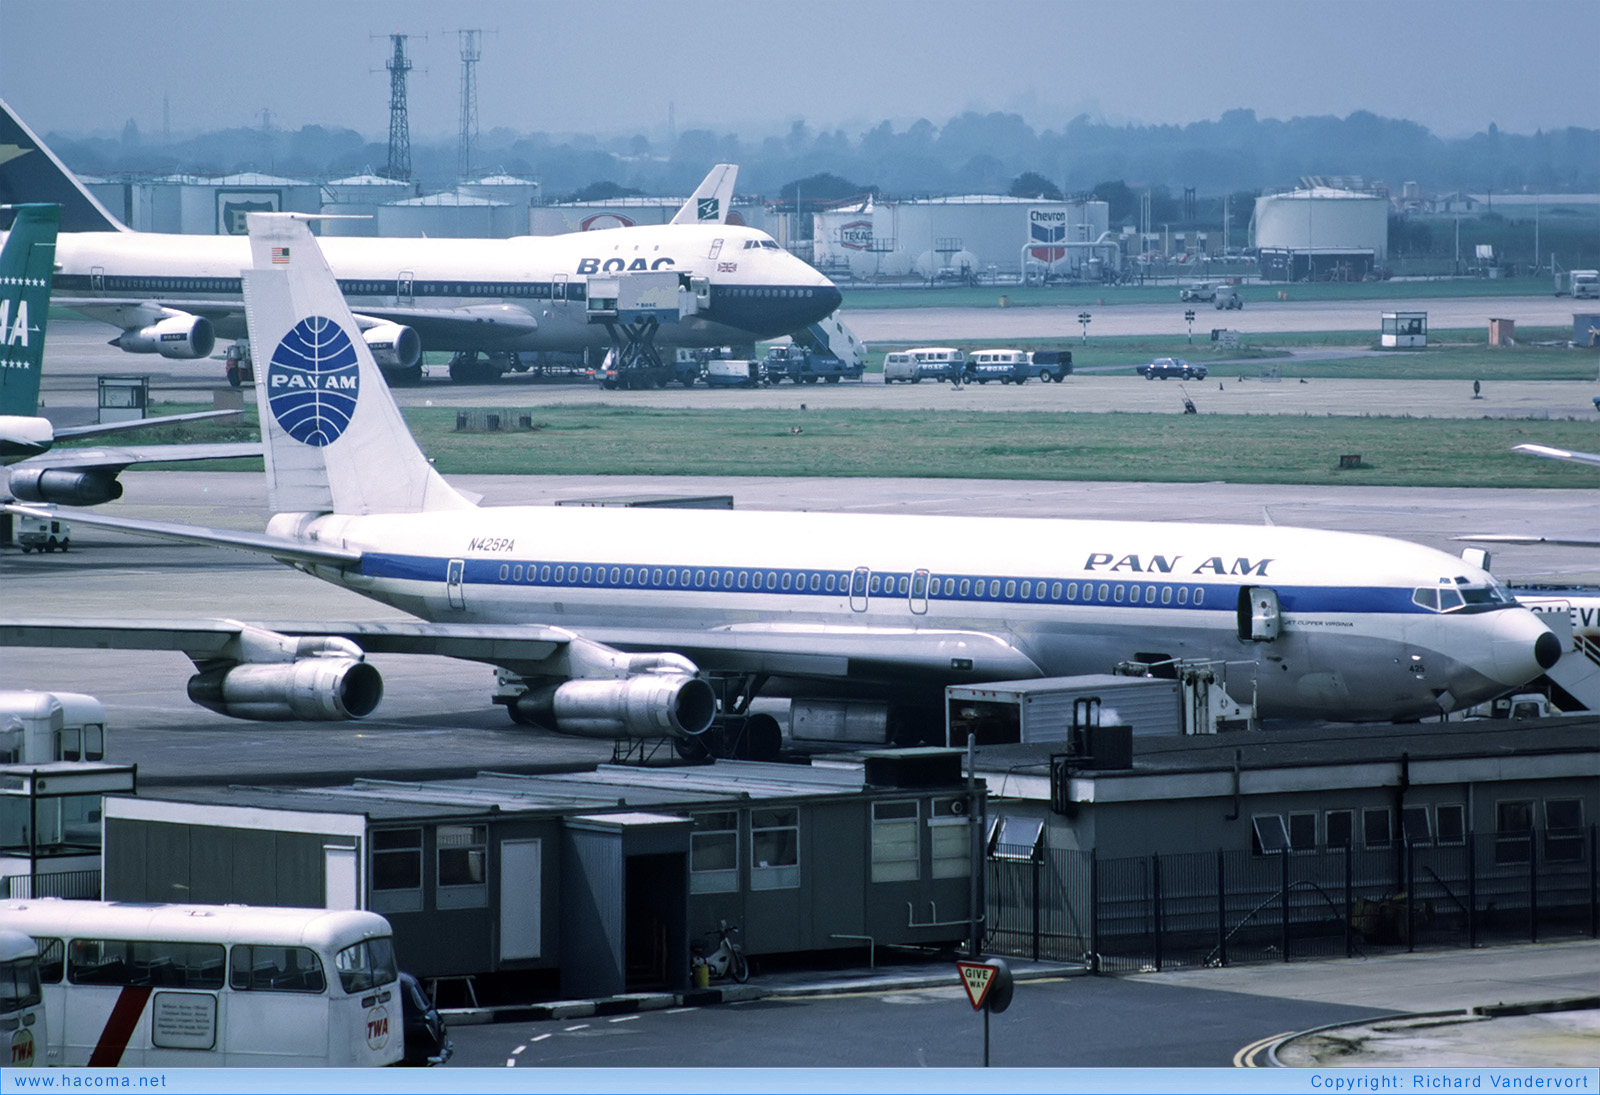 Foto von N425PA - Pan Am Clipper Virginia - London Heathrow Airport - 08.1972